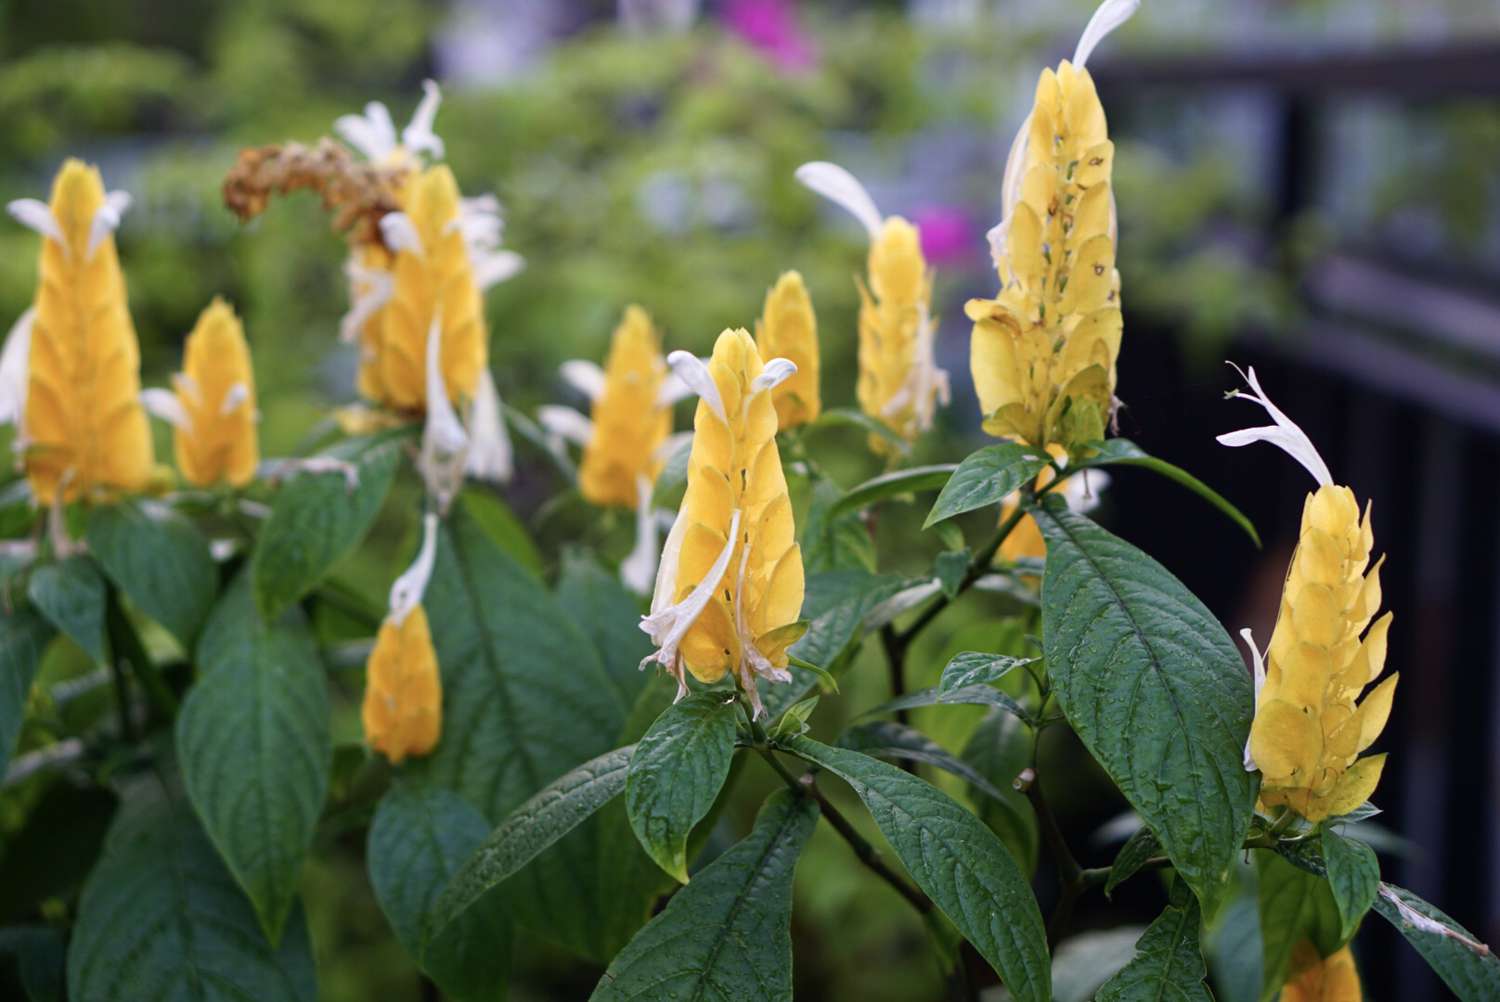 Goldene Garnelenpflanzen mit gelben kegelförmigen Staubgefäßen und kleinen weißen Blüten